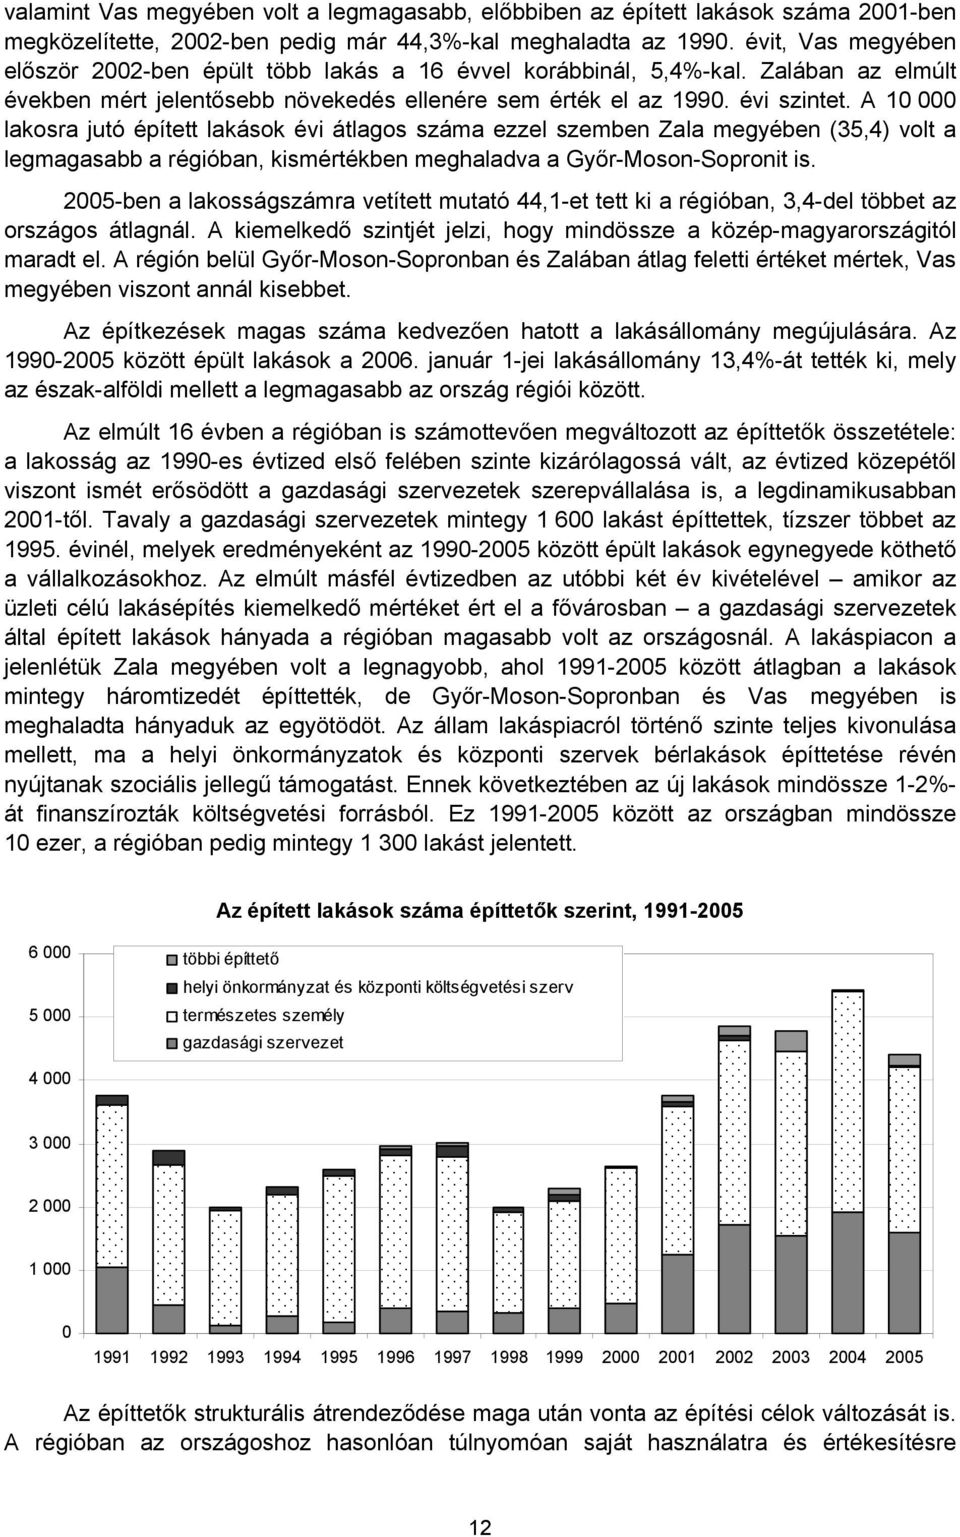 A 10 000 lakosra jutó épített lakások évi átlagos száma ezzel szemben Zala megyében (35,4) volt a legmagasabb a régióban, kismértékben meghaladva a Győr-Moson-Sopronit is.